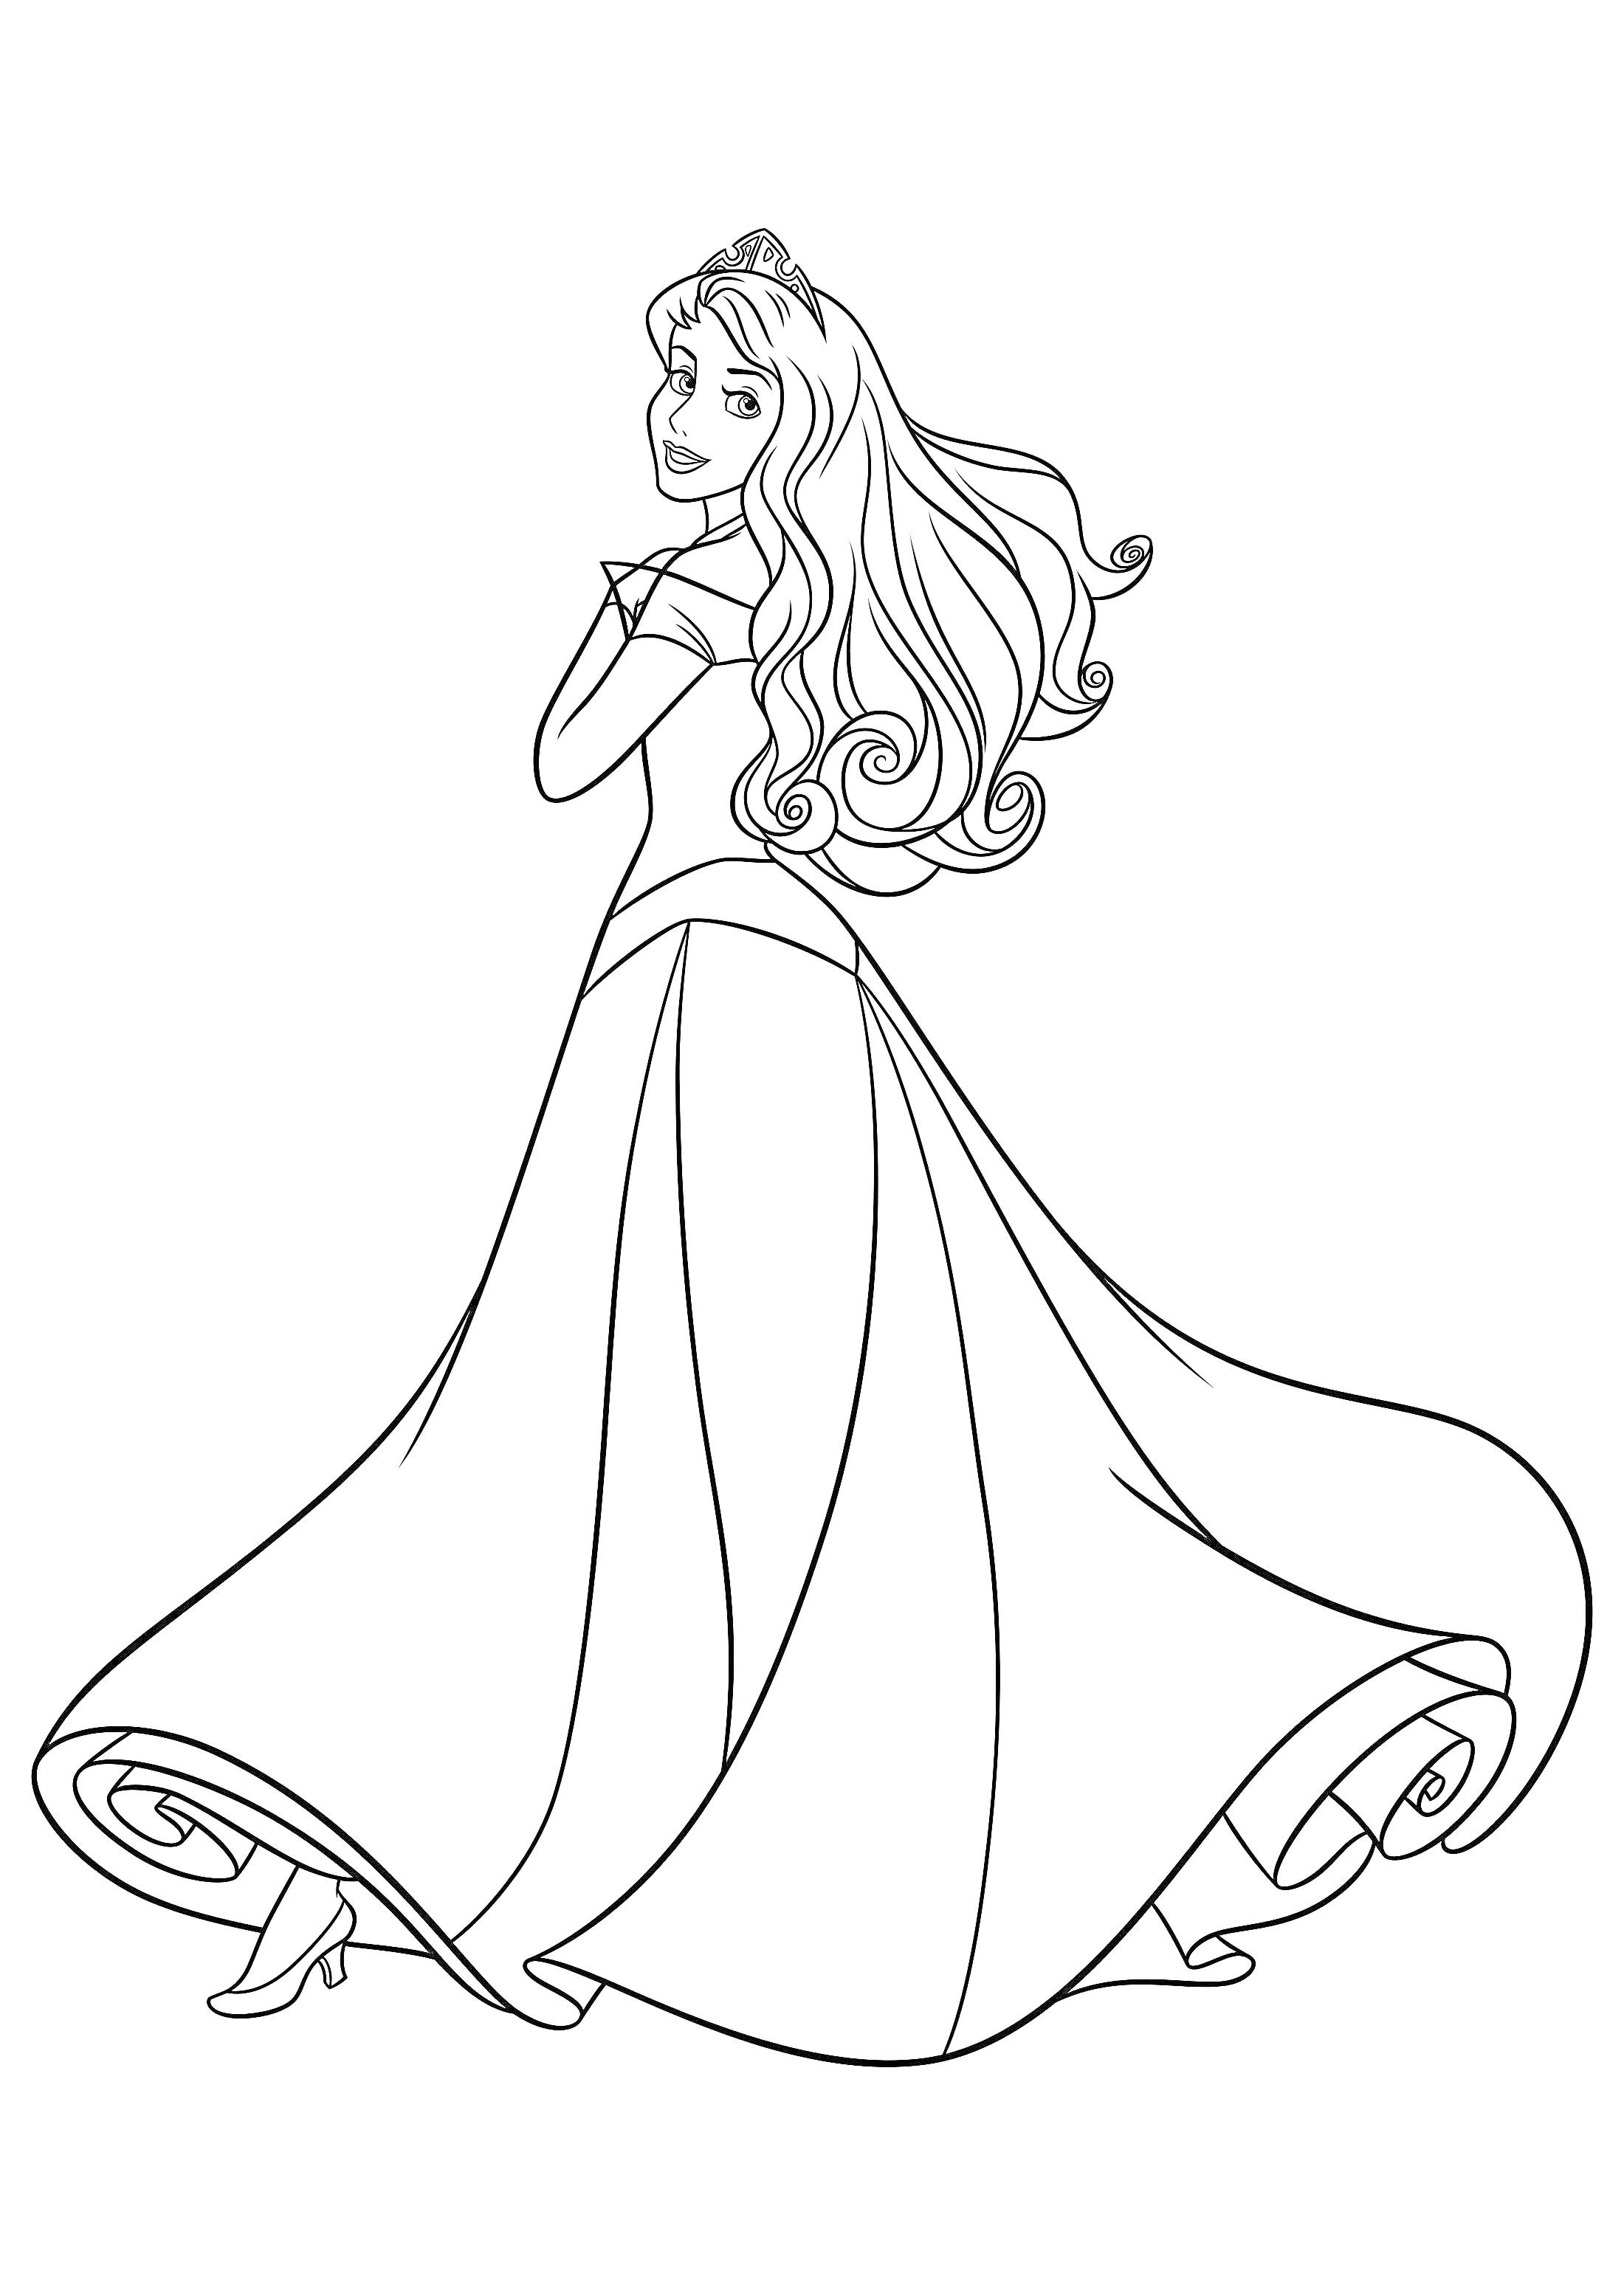 Раскраска принцесса с длинными волосами в пышном платье и туфлях